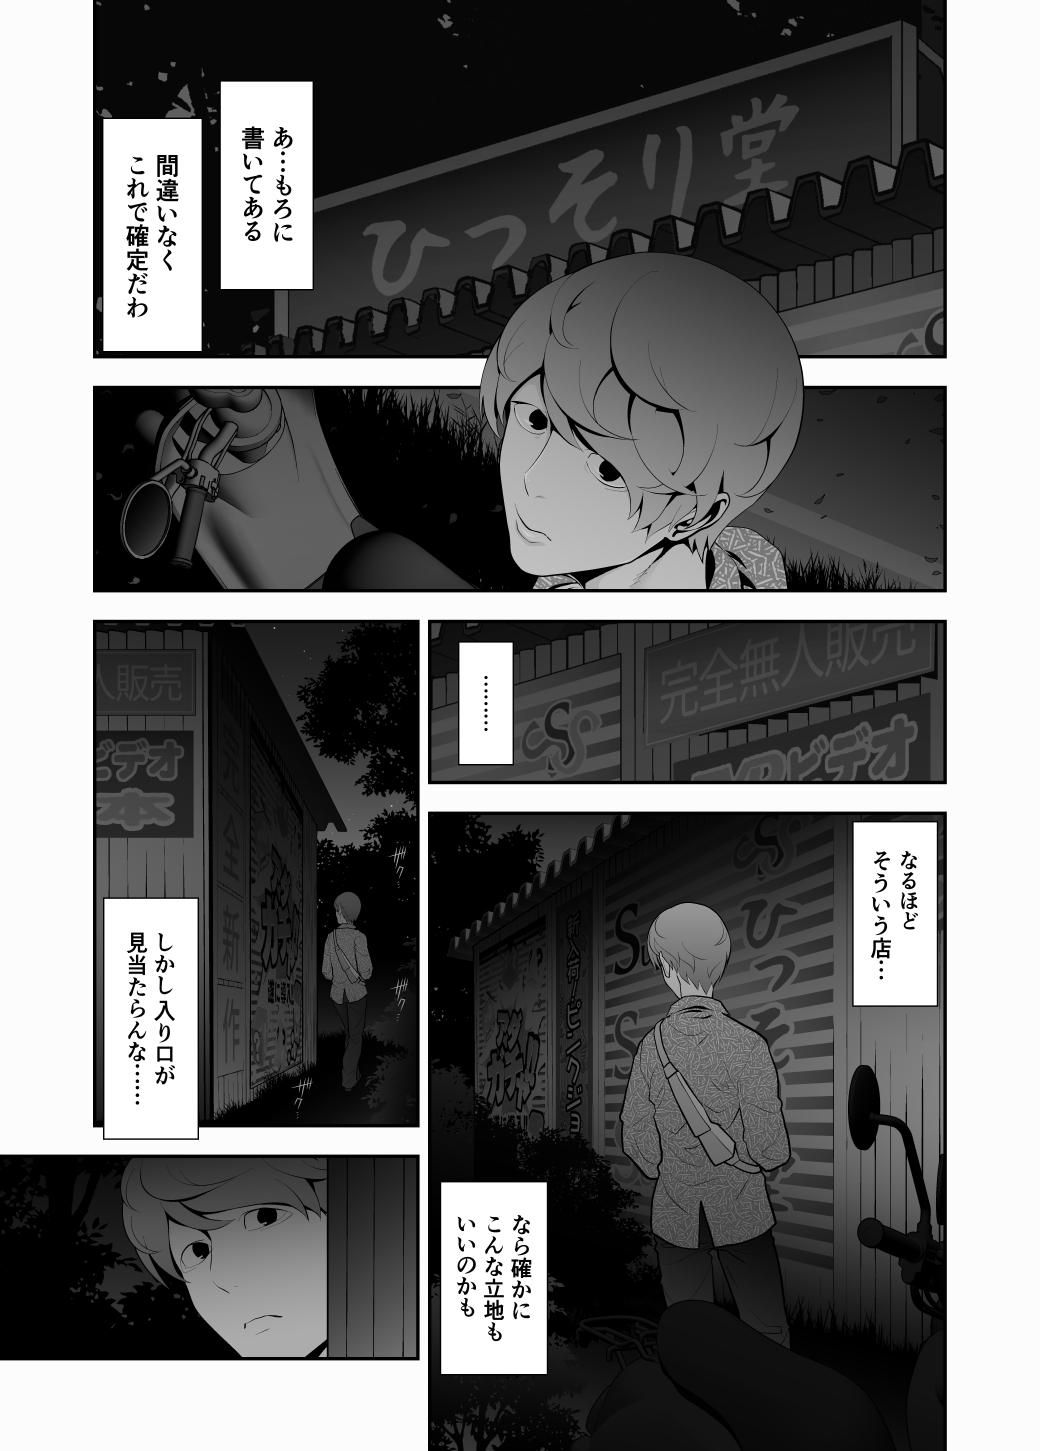 3some Josoko Hatten Kei ≪Hissoridou Hen≫ - Original Footworship - Page 7